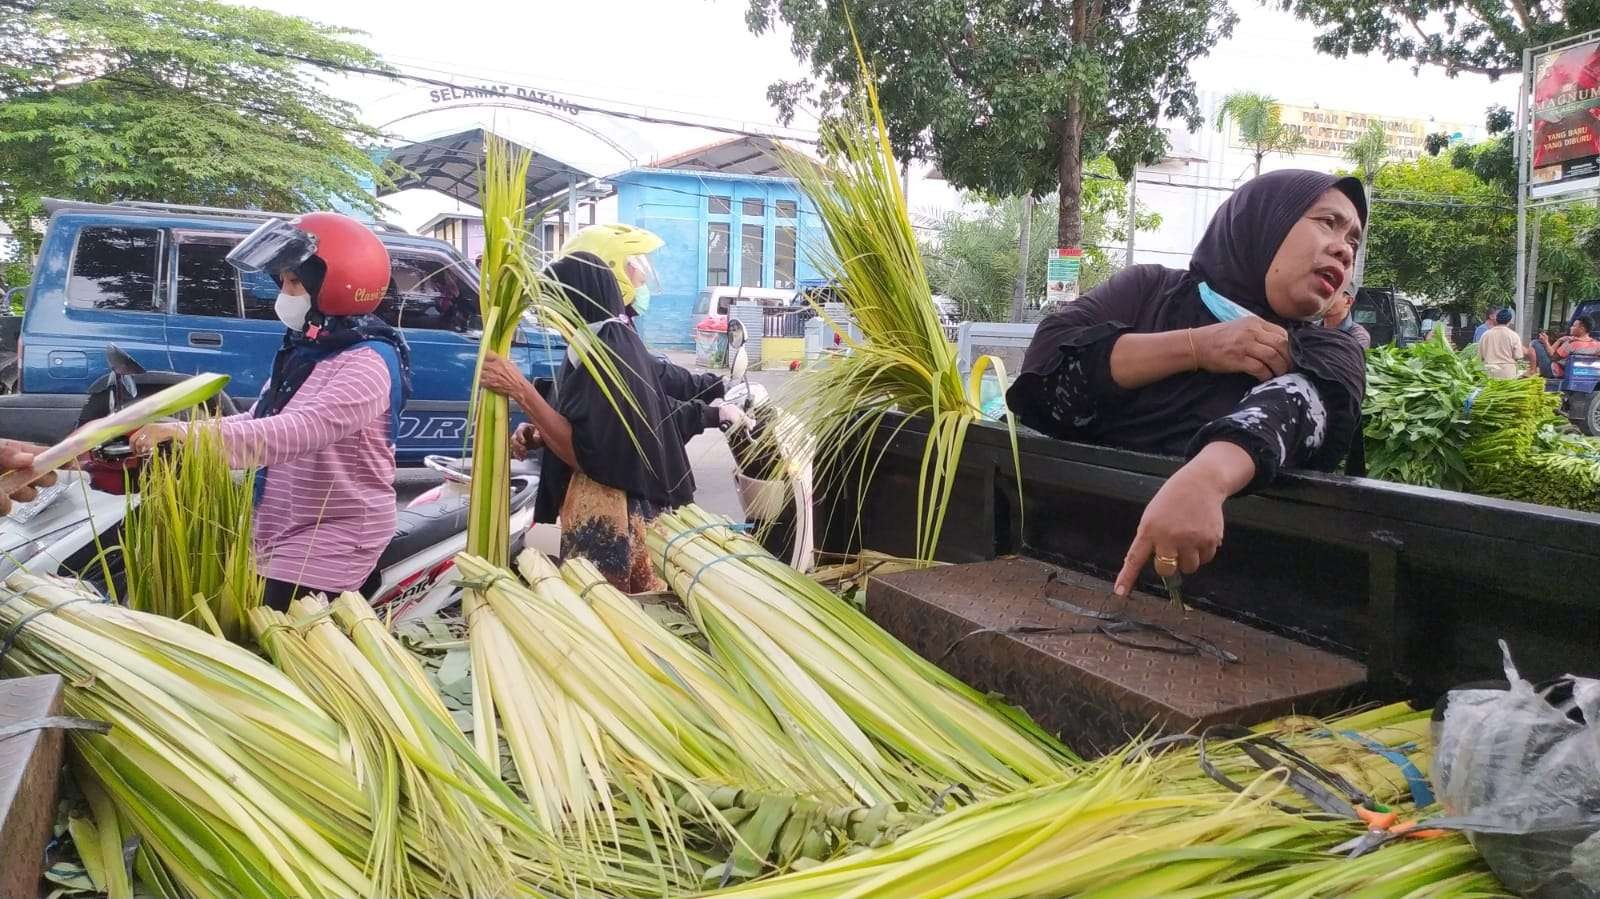 Pedagang janur kembali menuai rezeki menyambut Lebaran ketupat. (Foto: Imron Rosidi/Ngopiibareng.id)